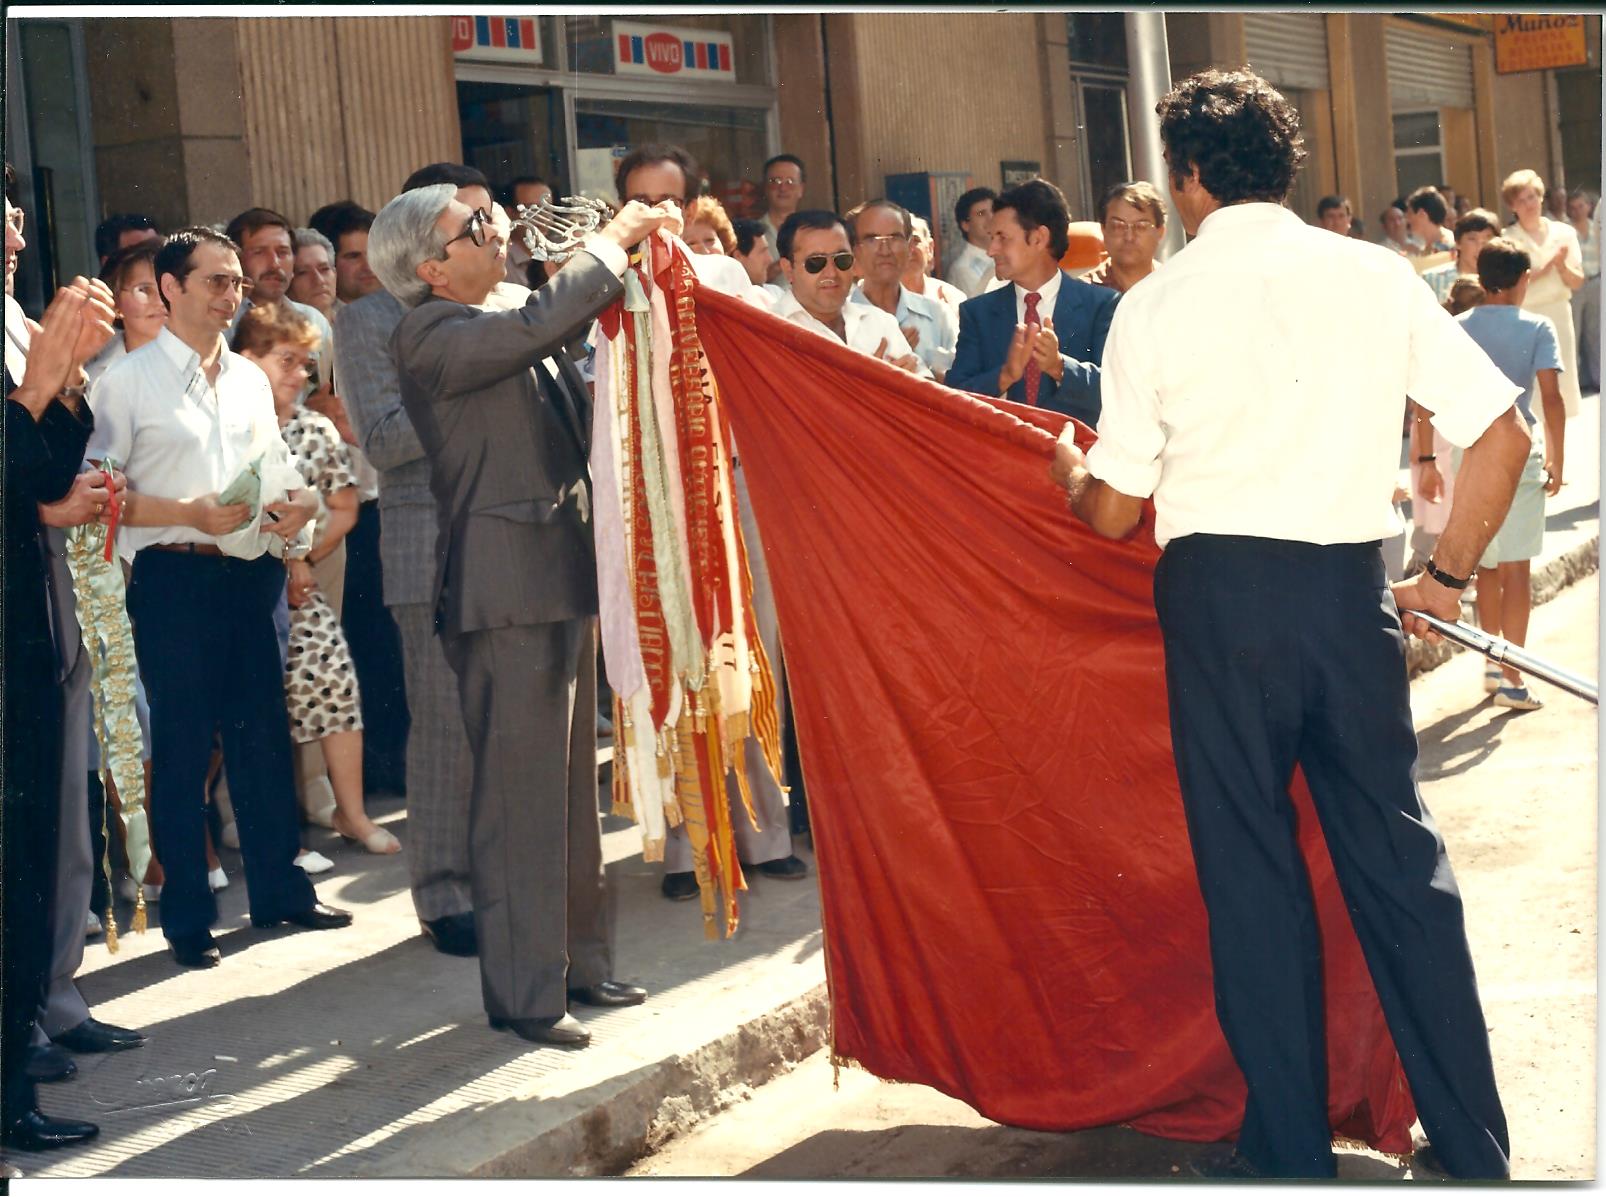 1986 Angel Asuncion posa una insignia a un lestandard durant XVIII Assemblea General Primitiva Setabense